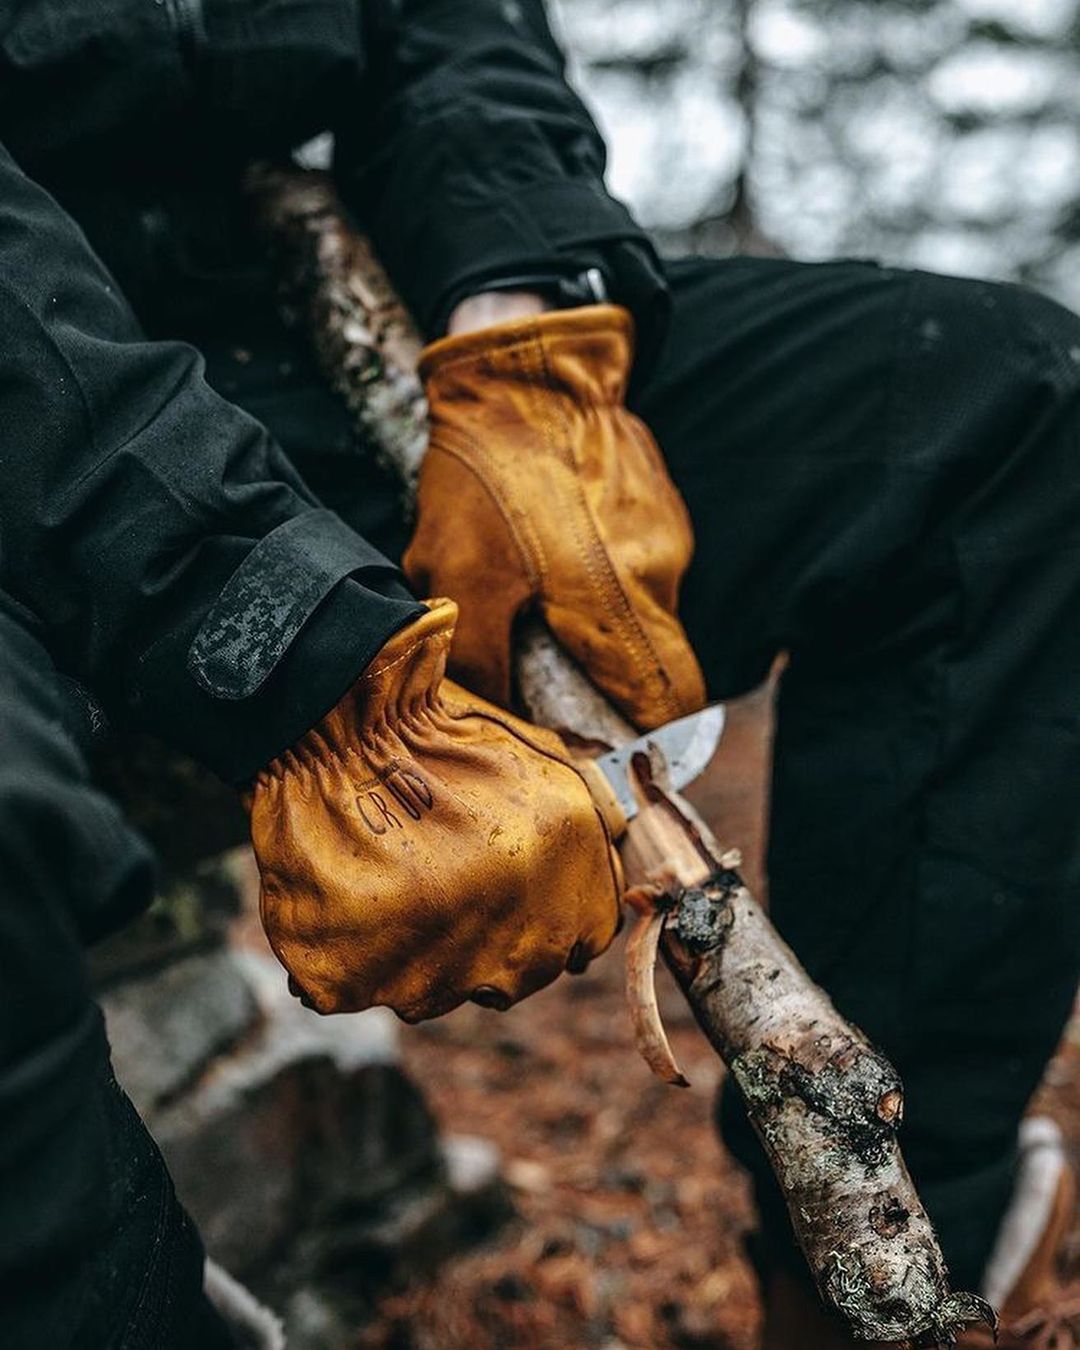 Классические кожаные рабочие перчатки для бушкрафта и туризма Crud Gjöra Gloves, Natural